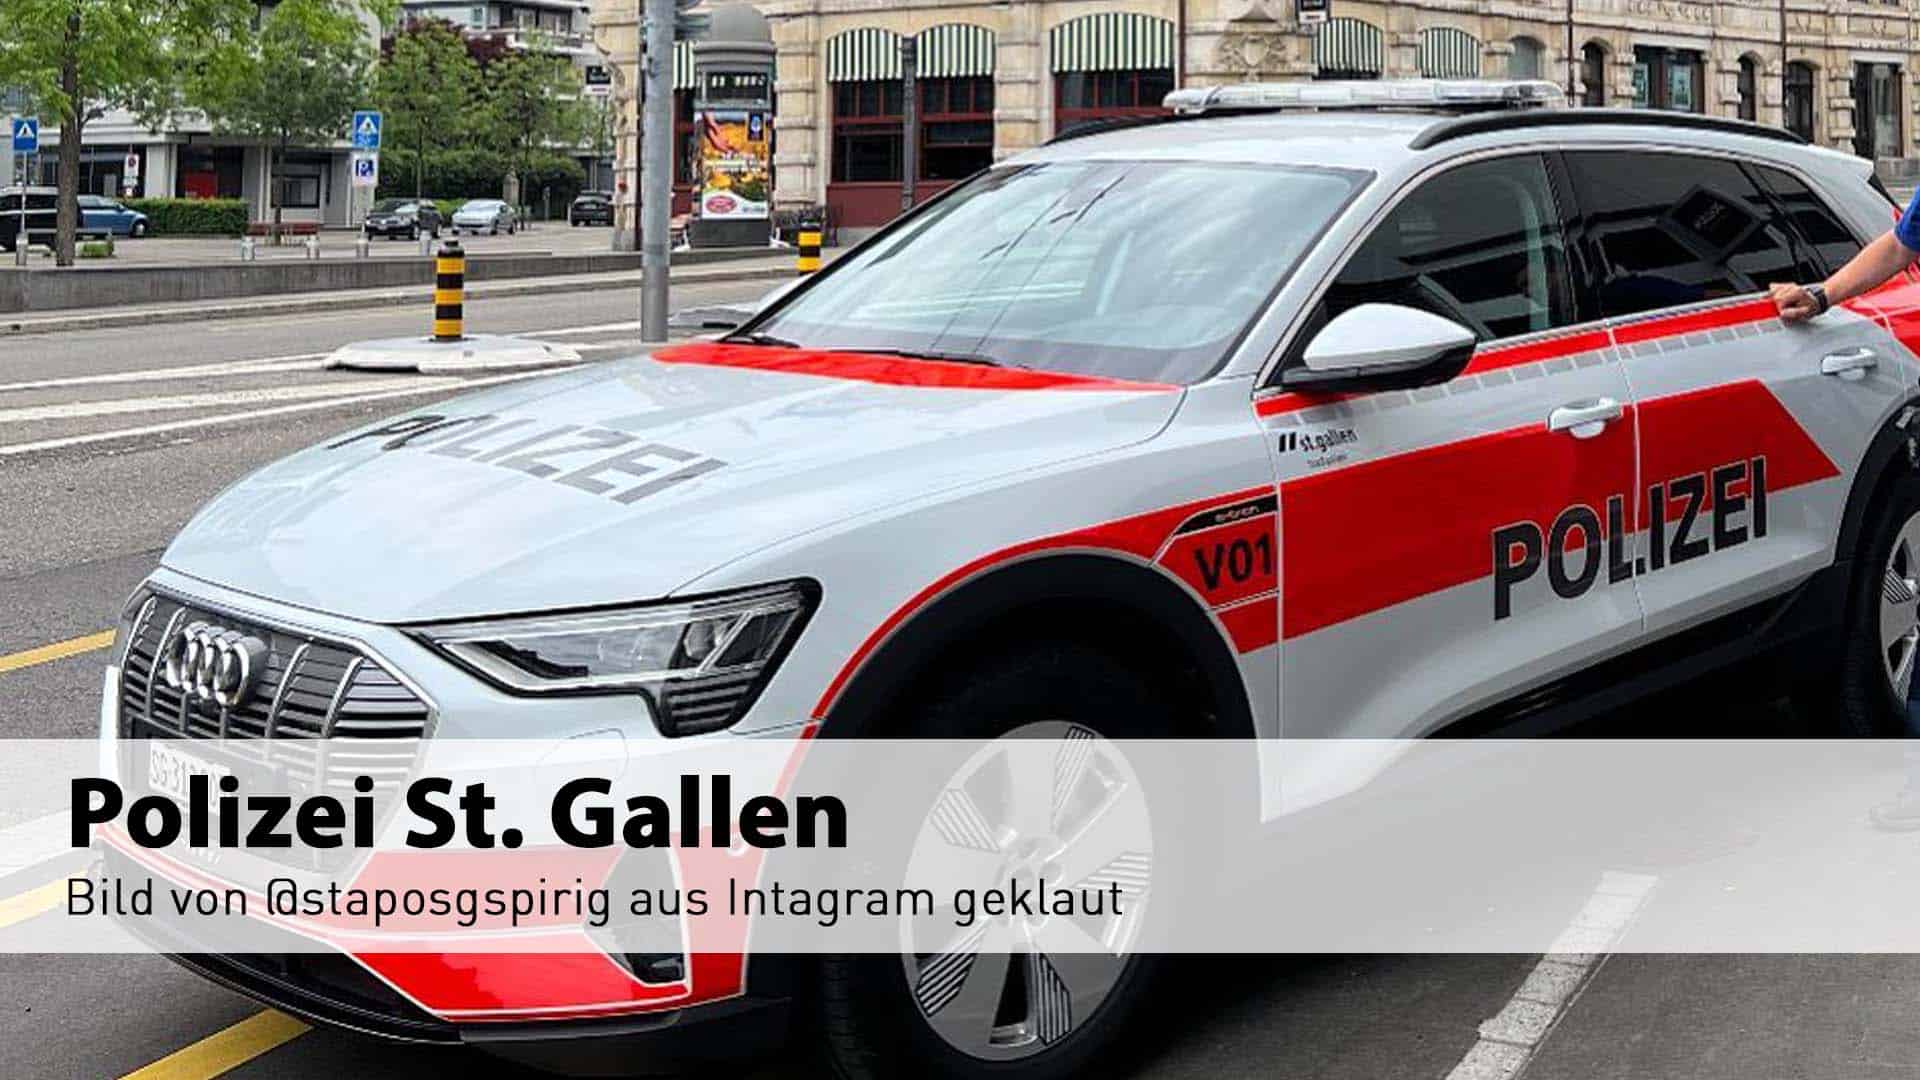 Verstösst Schweizer ePolizei selbst gegen das Gesetz?